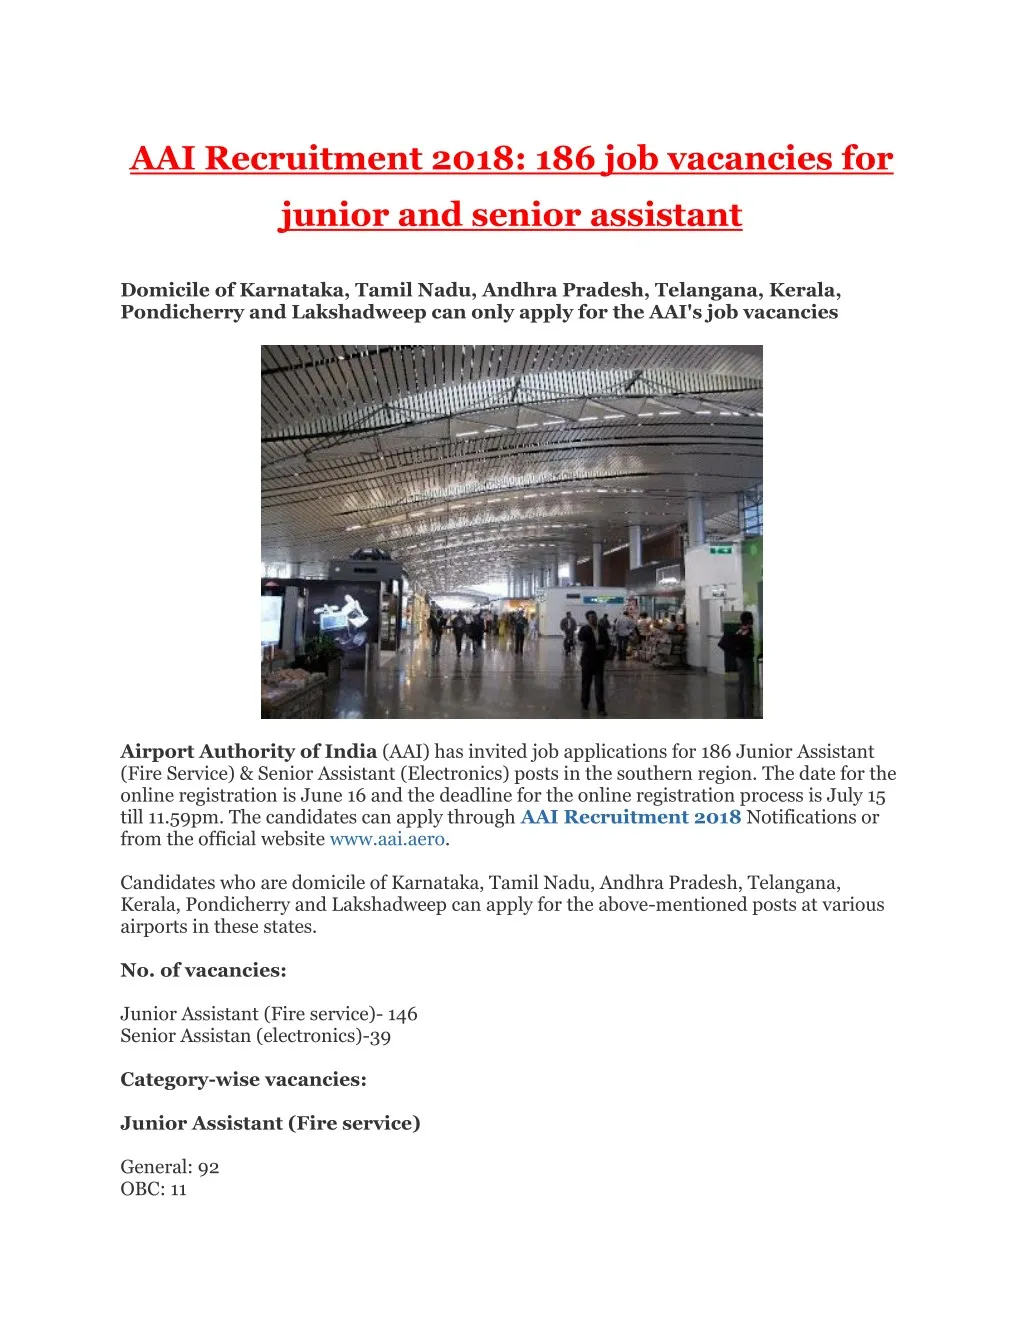 aai recruitment 2018 186 job vacancies for